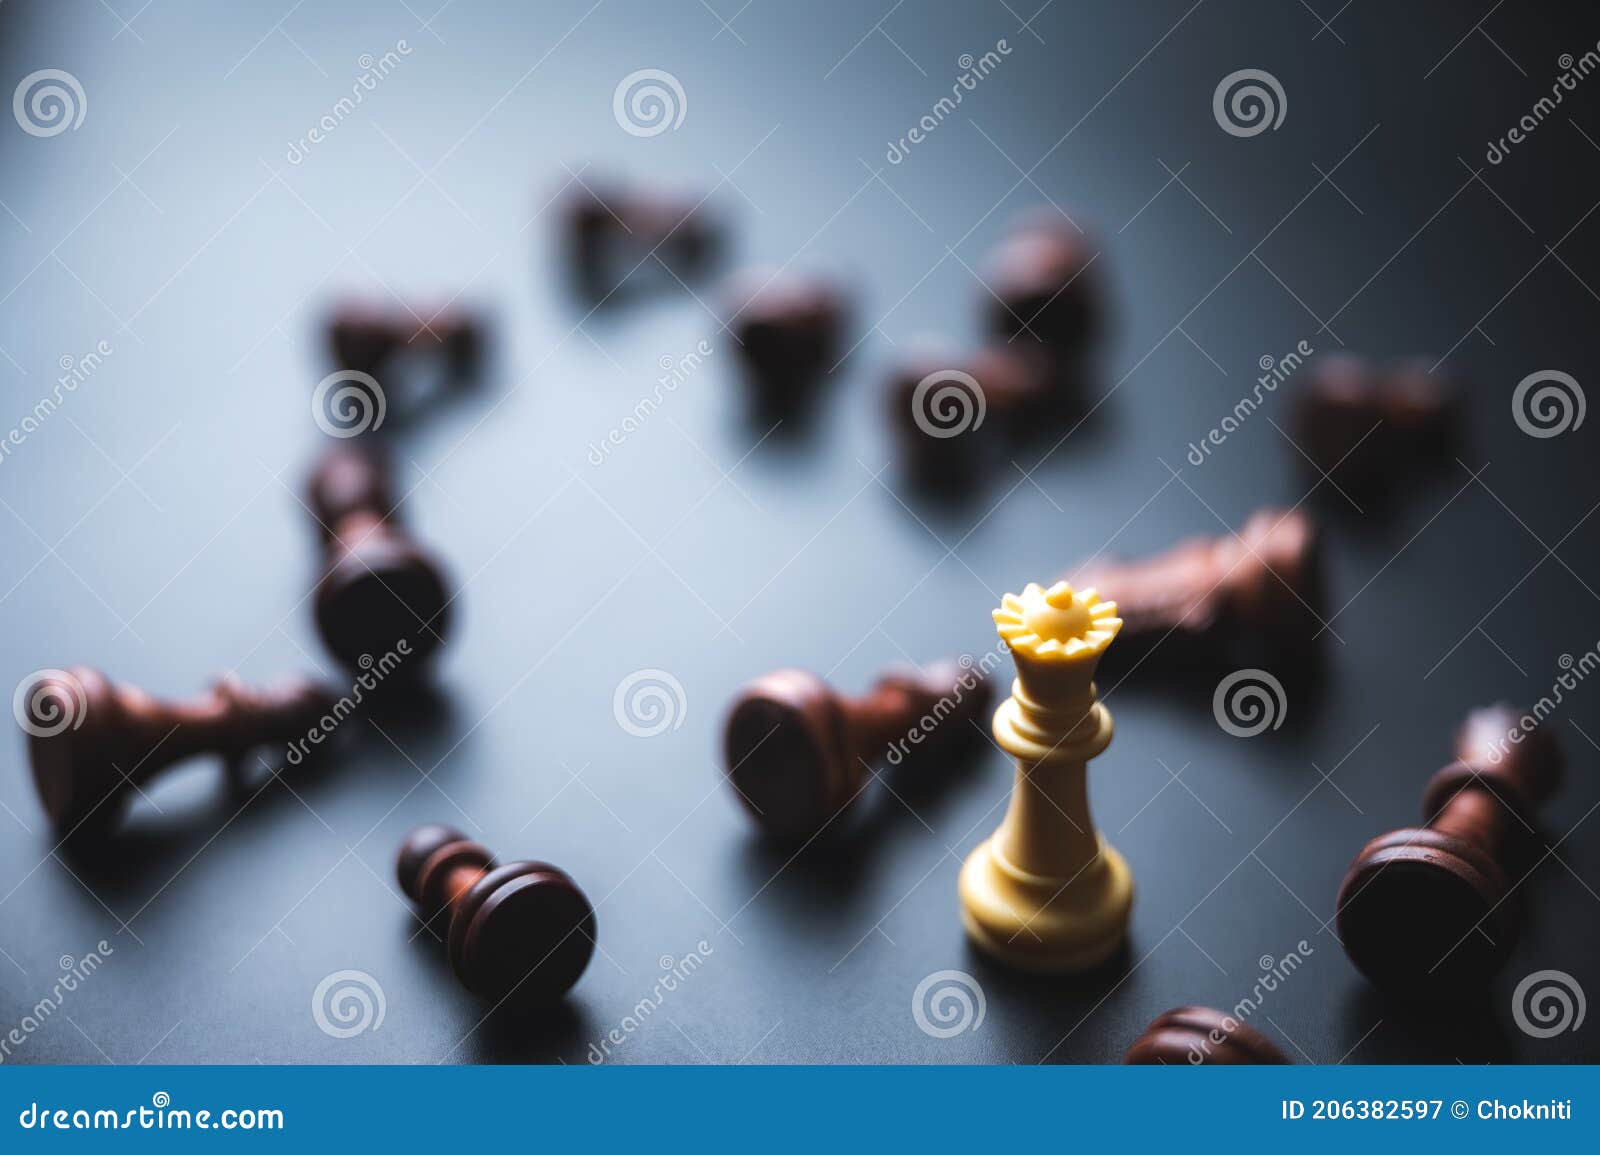 Peças douradas e prateadas do rei do xadrez convide cara a cara e há peças  de xadrez no fundo. conceito de competição, liderança e visão de negócios  para vencer em jogos de